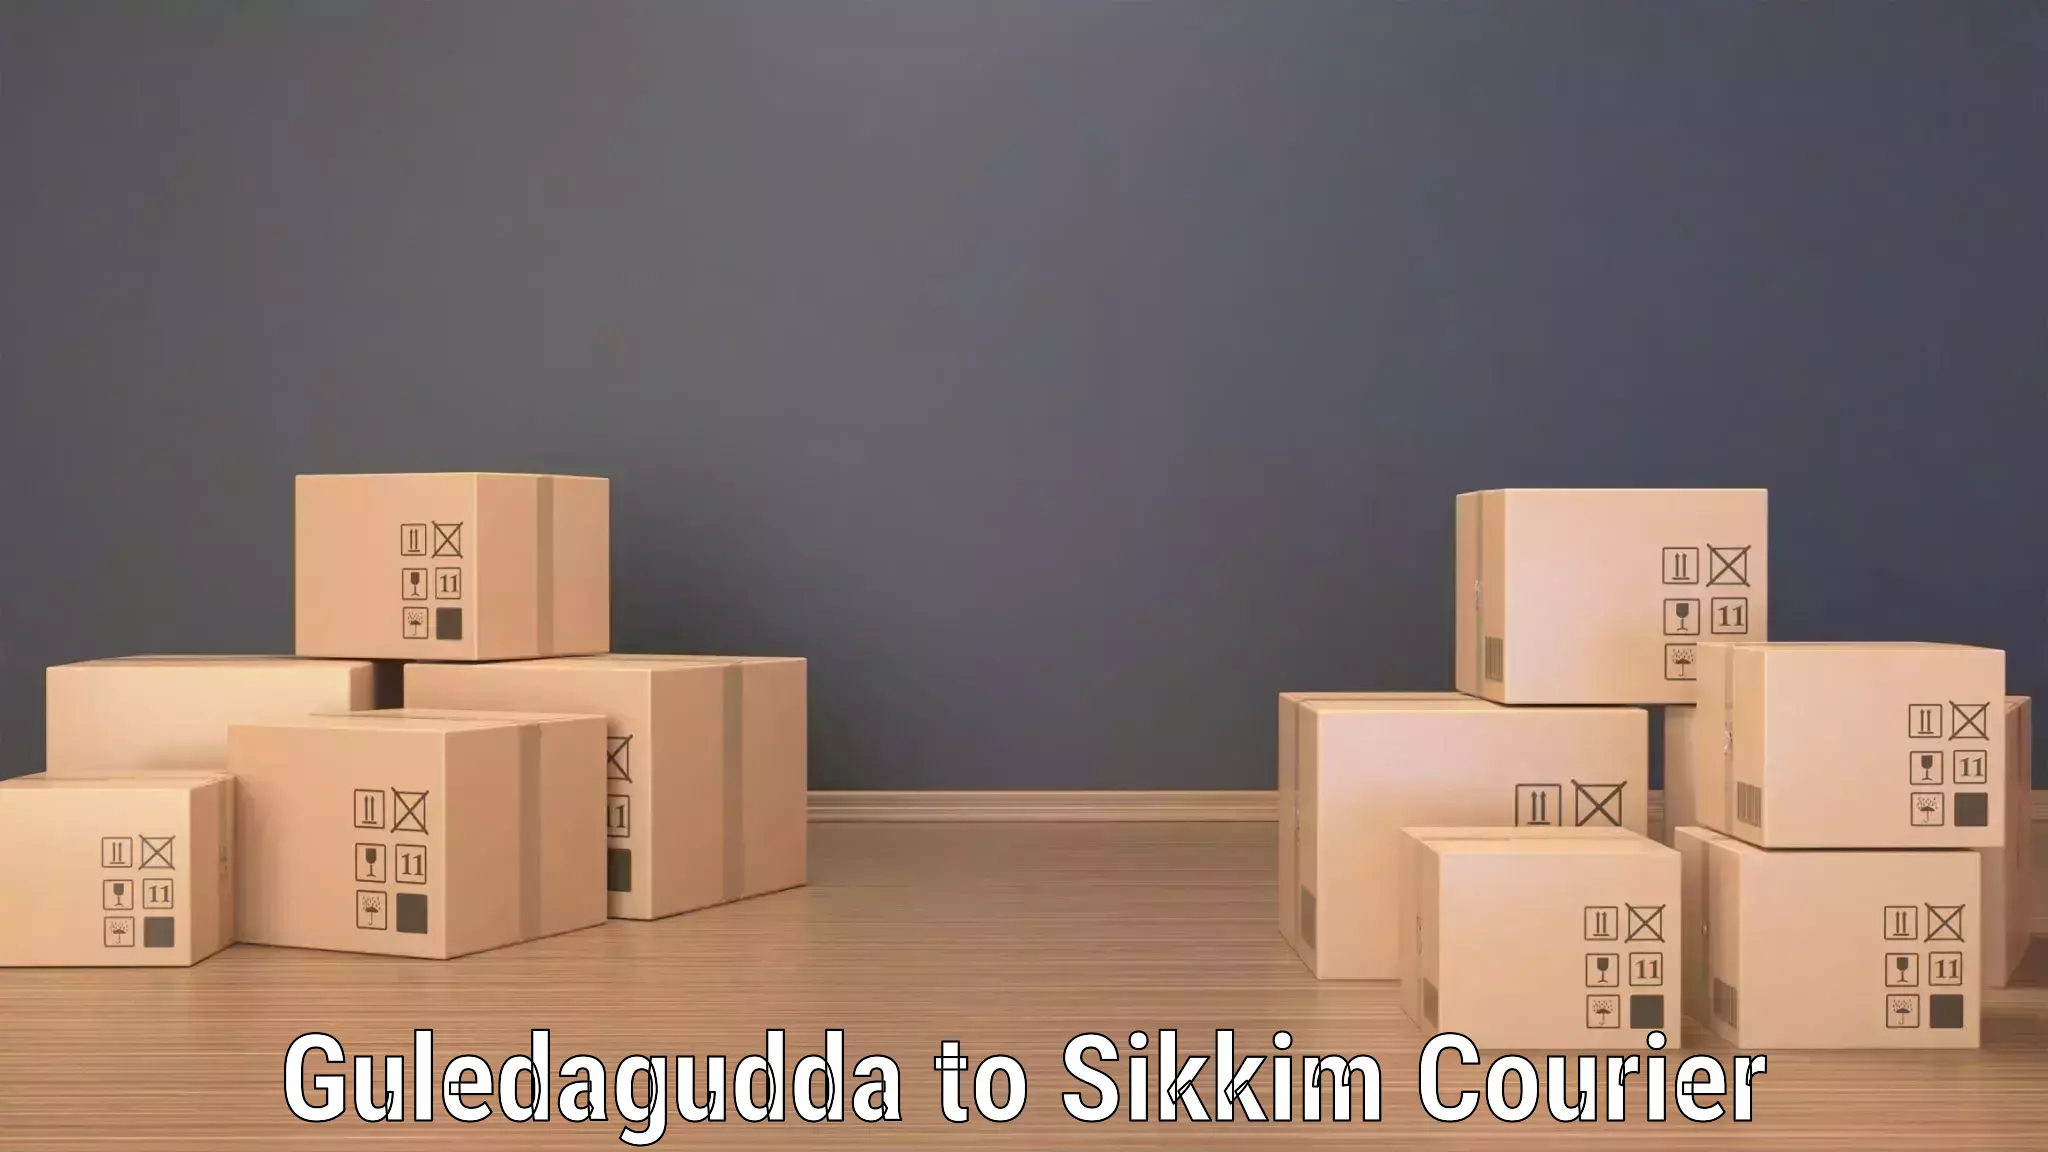 Efficient cargo handling in Guledagudda to East Sikkim